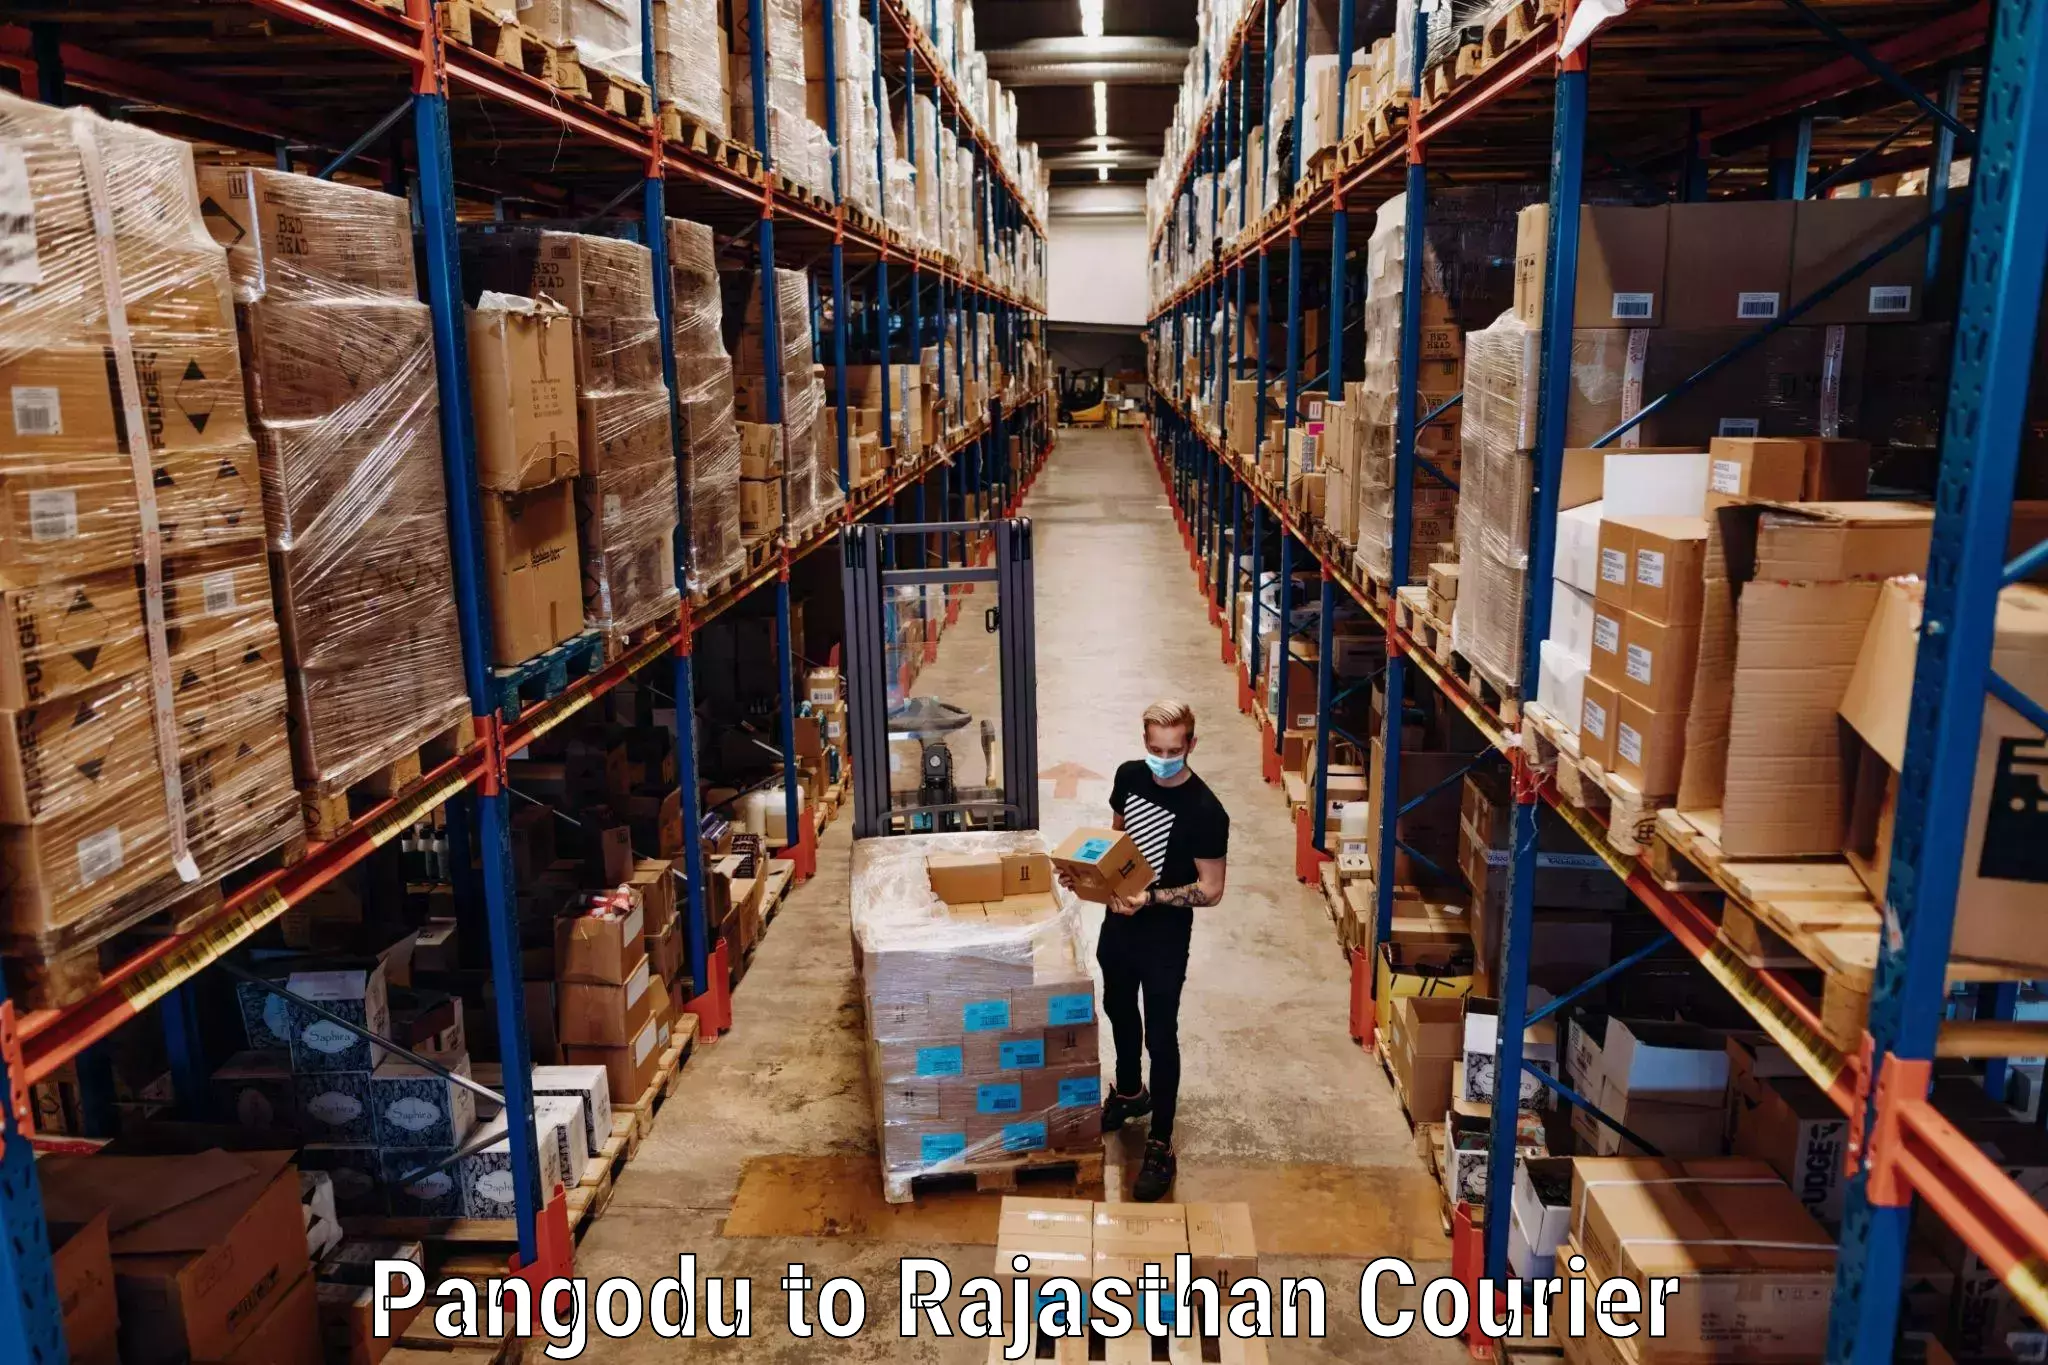 Baggage transport innovation Pangodu to Rajasthan